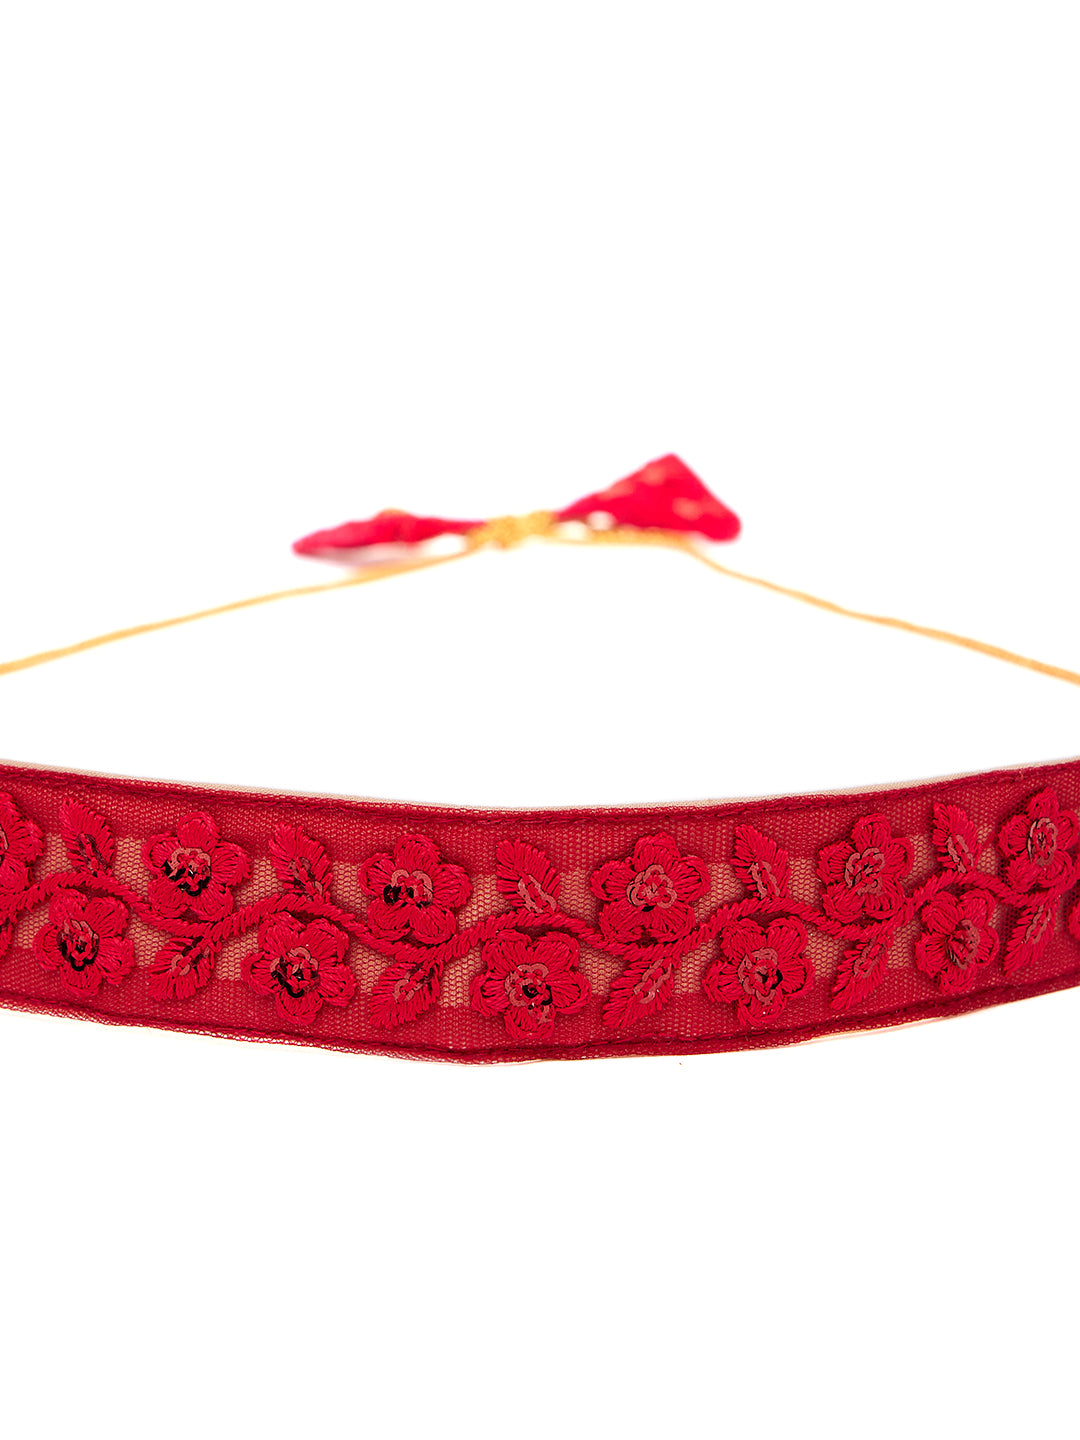 Athena Women Fuchsia Embroidered Belt - Athena Lifestyle